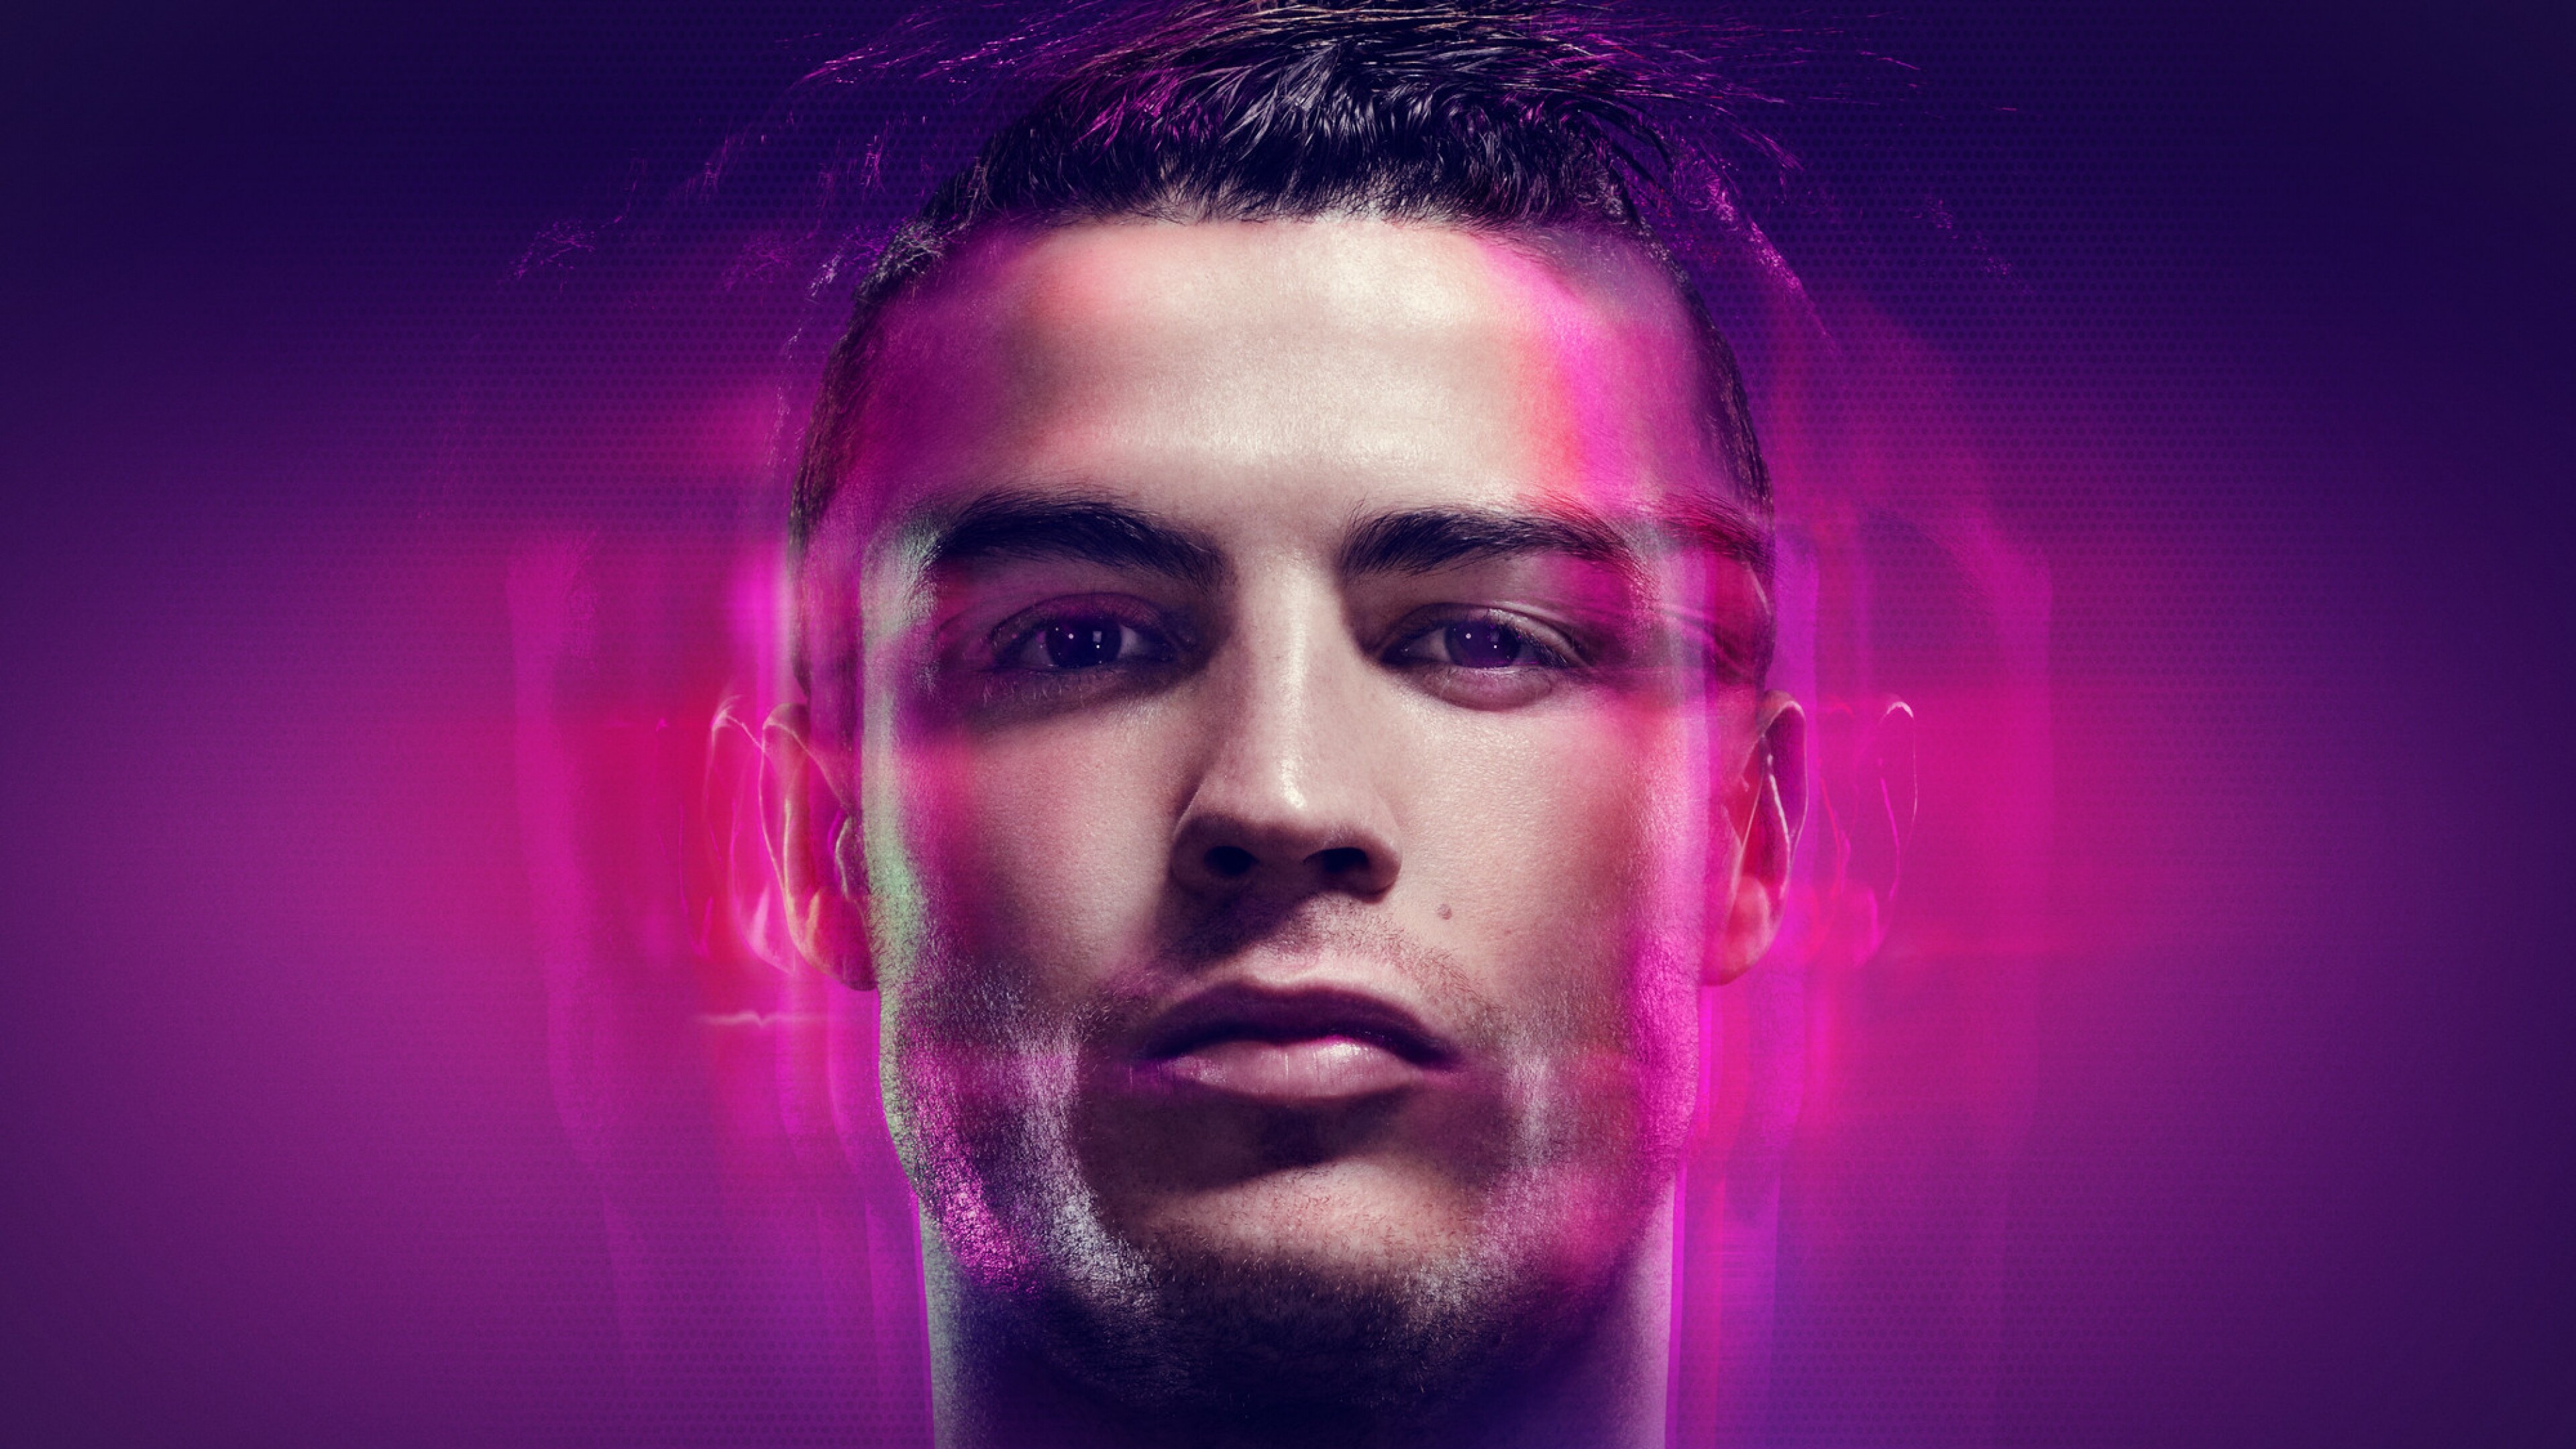 Ronaldo: Cristiano Ronaldo dos Santos Aveiro, a Portuguese professional footballer. 3840x2160 4K Wallpaper.